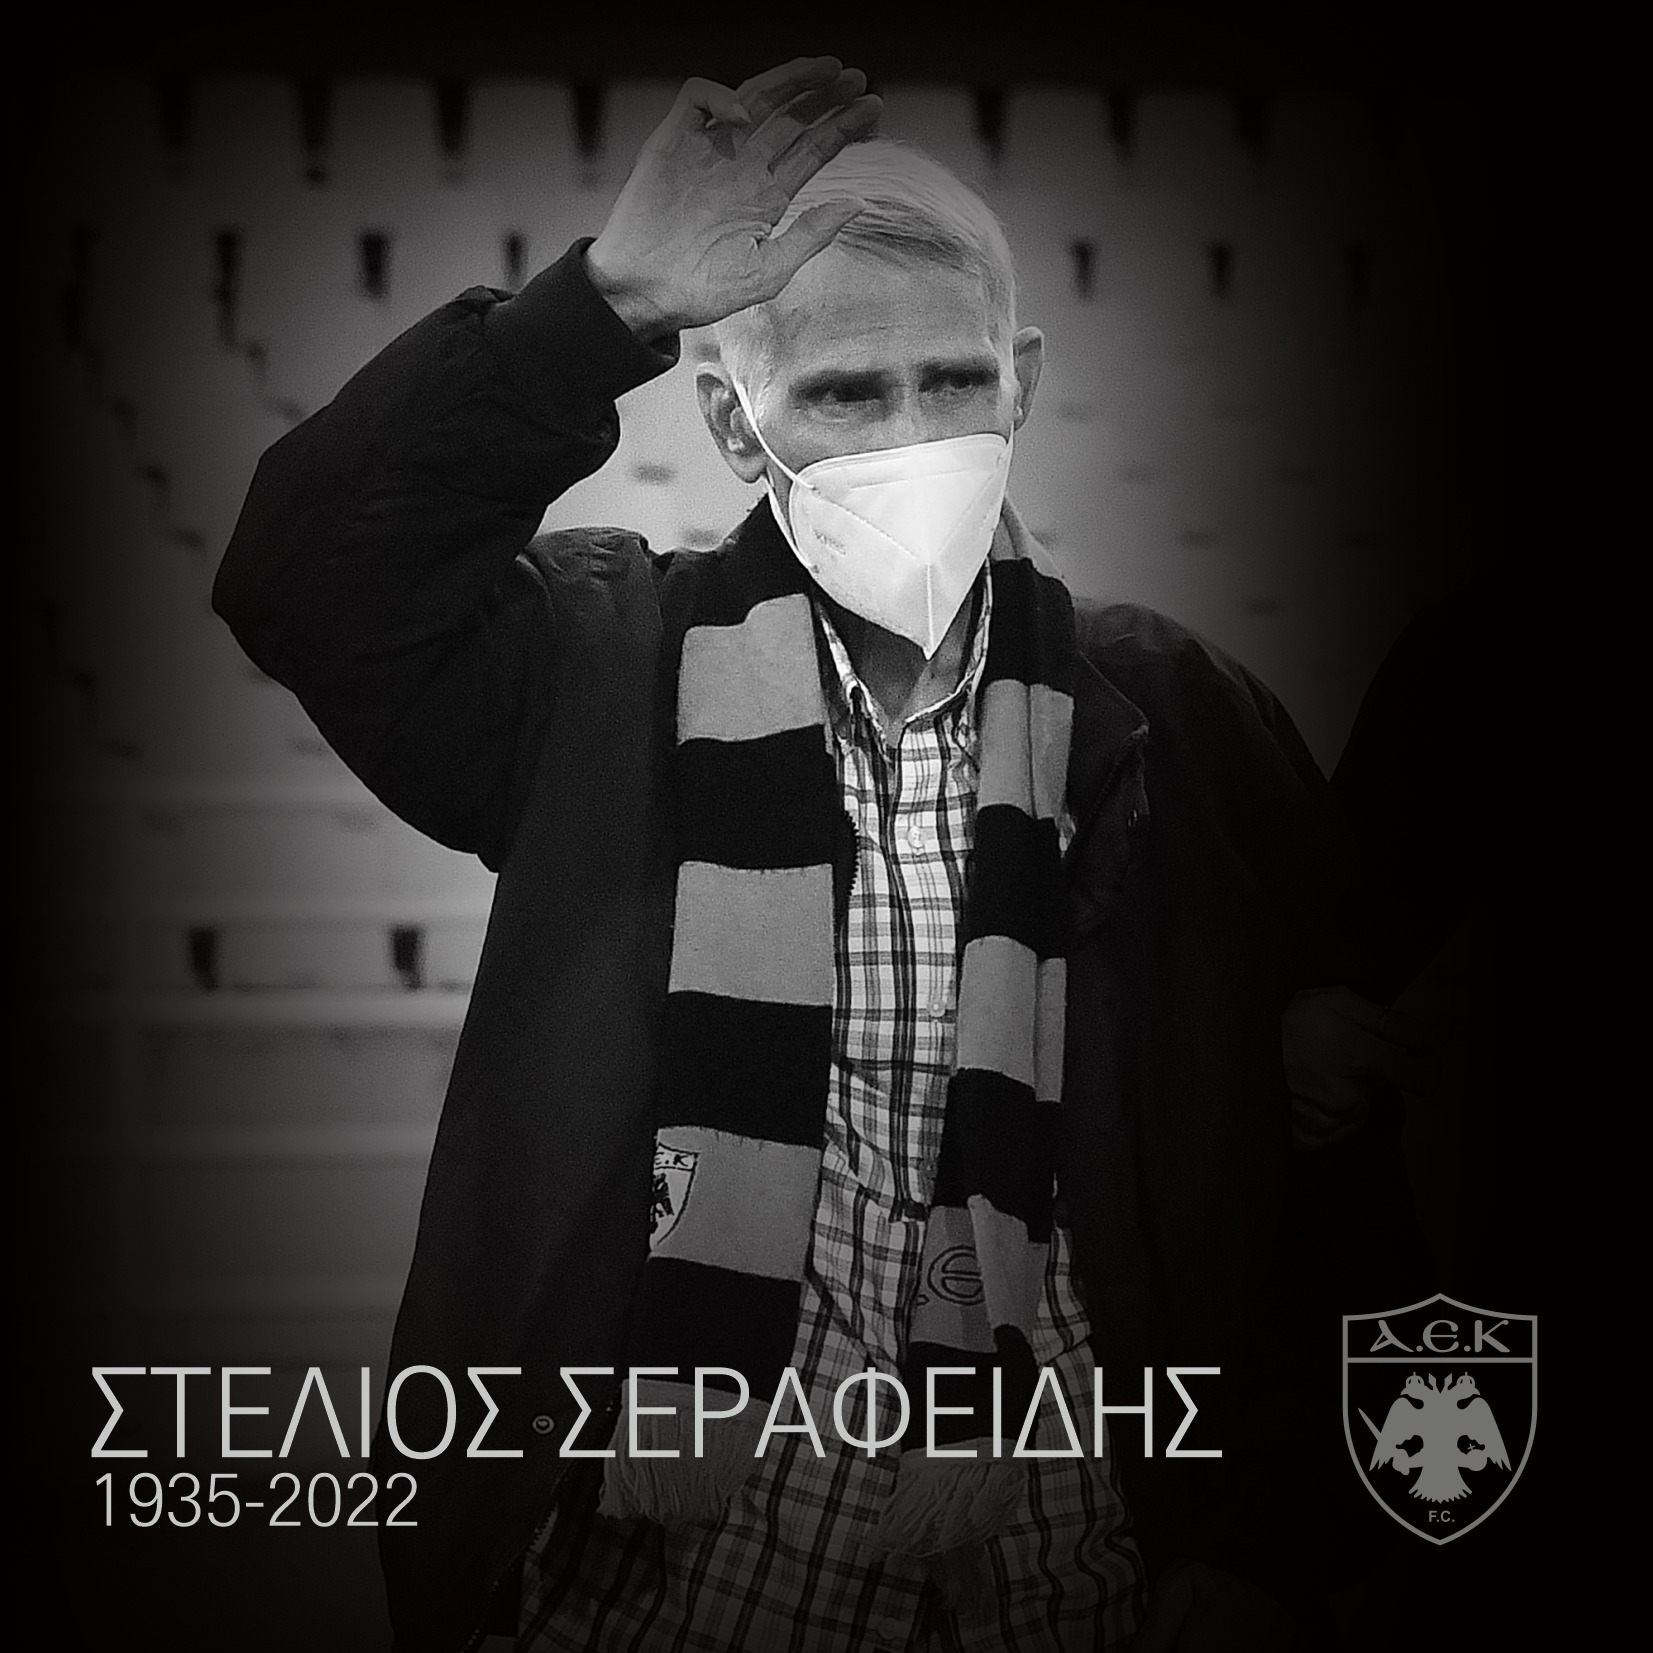 Θρήνος στην ΑΕΚ: Πέθανε ο παίκτης σύμβολο Στέλιος Σεραφείδης